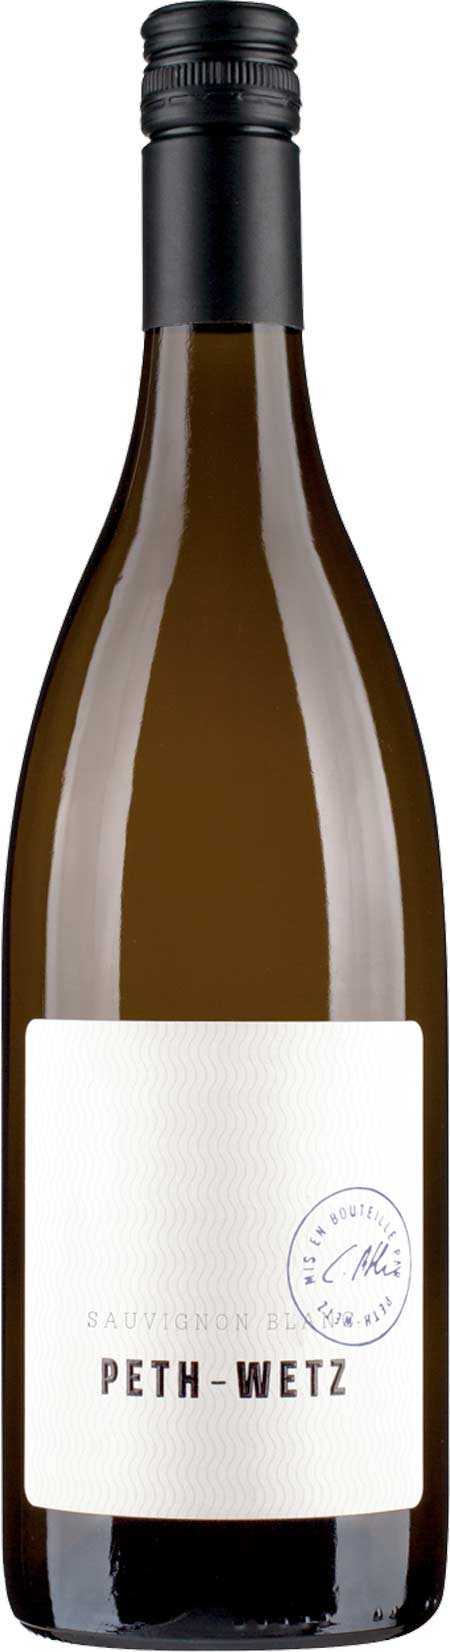 Sauvignon Blanc - Qualitätswein - trocken - Weingut Peth-Wetz